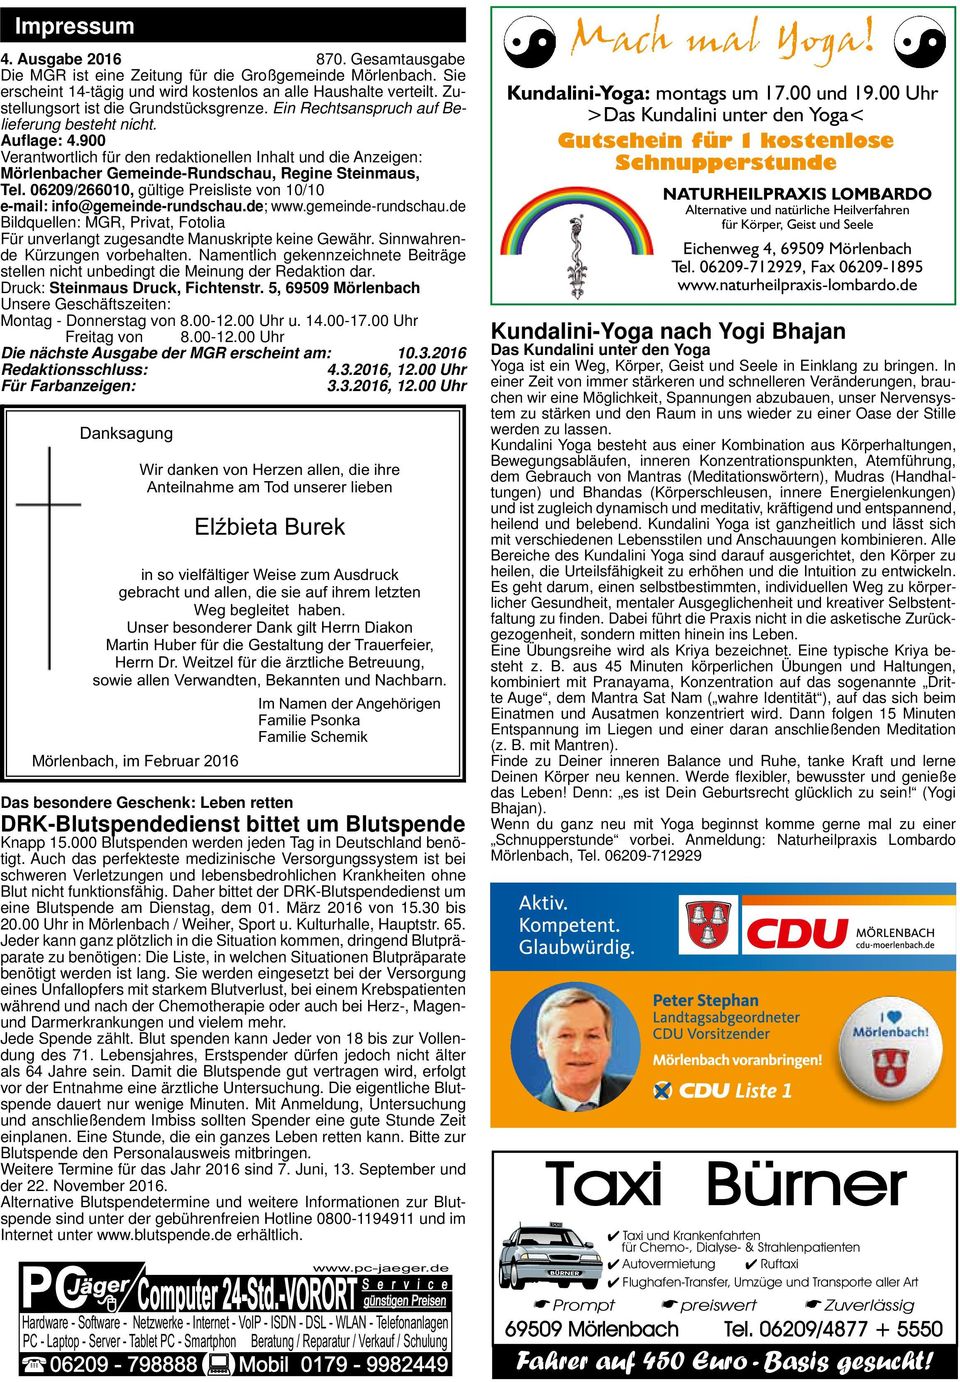 900 Verantwortlich für den redaktionellen Inhalt und die Anzeigen: Mörlenbacher Gemeinde-Rundschau, Regine Steinmaus, Tel. 06209/266010, gültige Preisliste von 10/10 e-mail: info@gemeinde-rundschau.